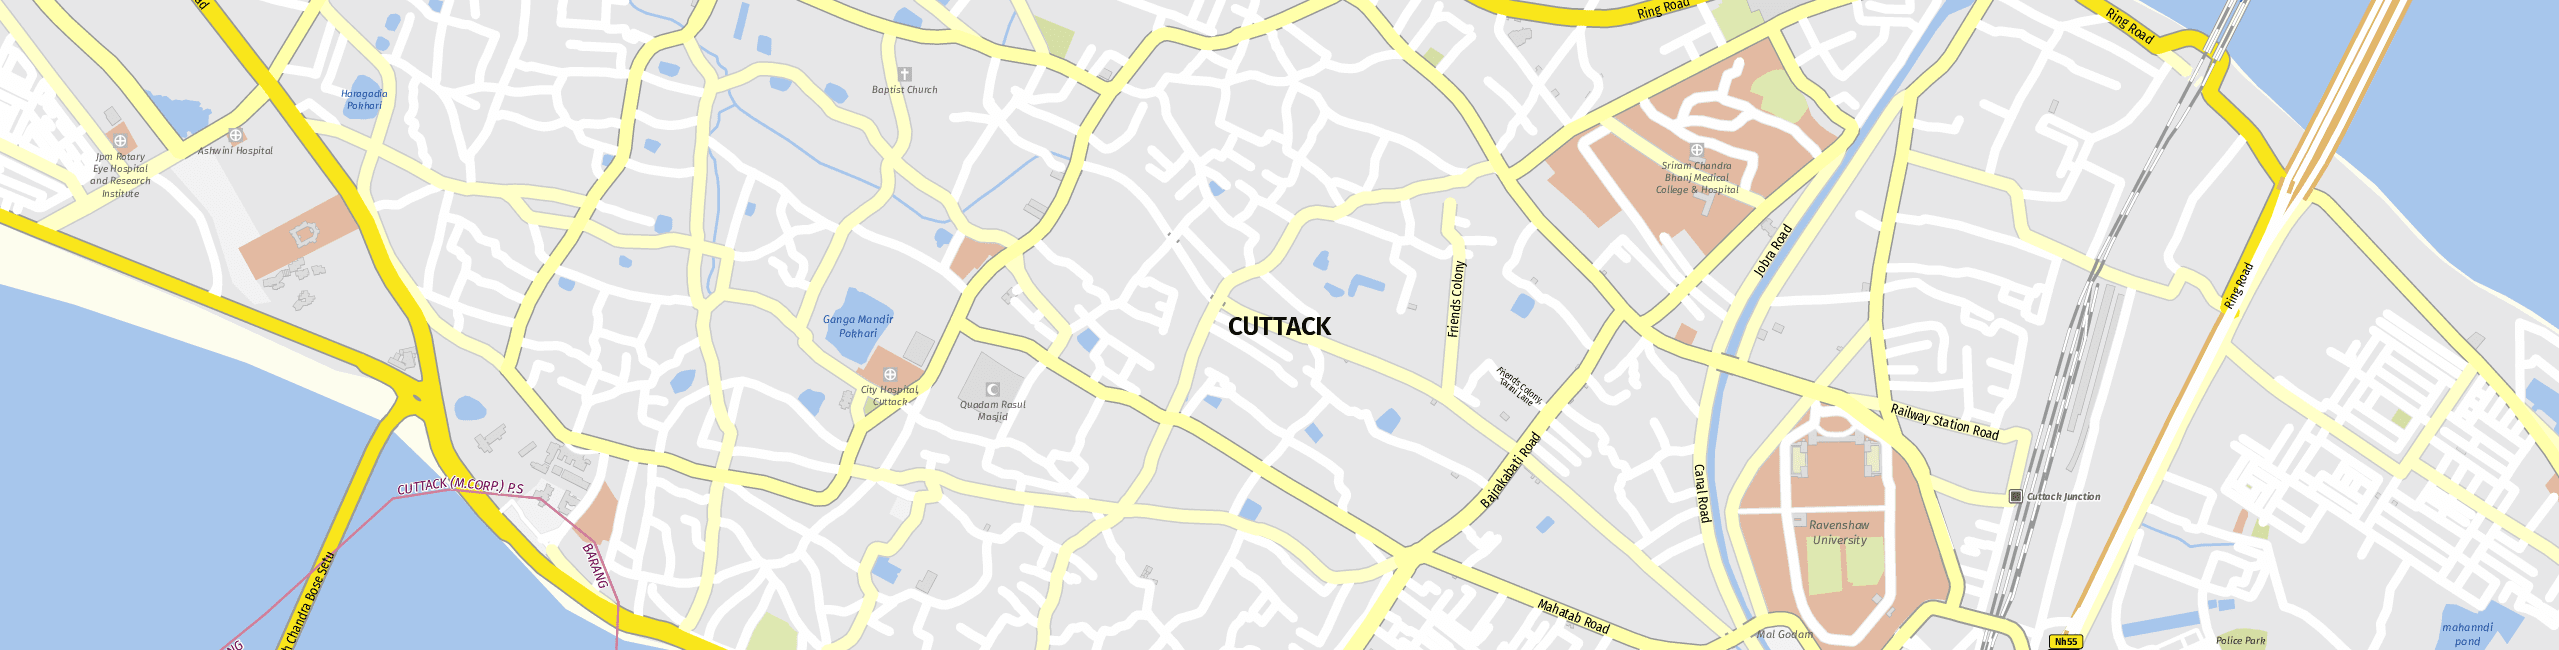 Stadtplan Cuttack zum Downloaden.